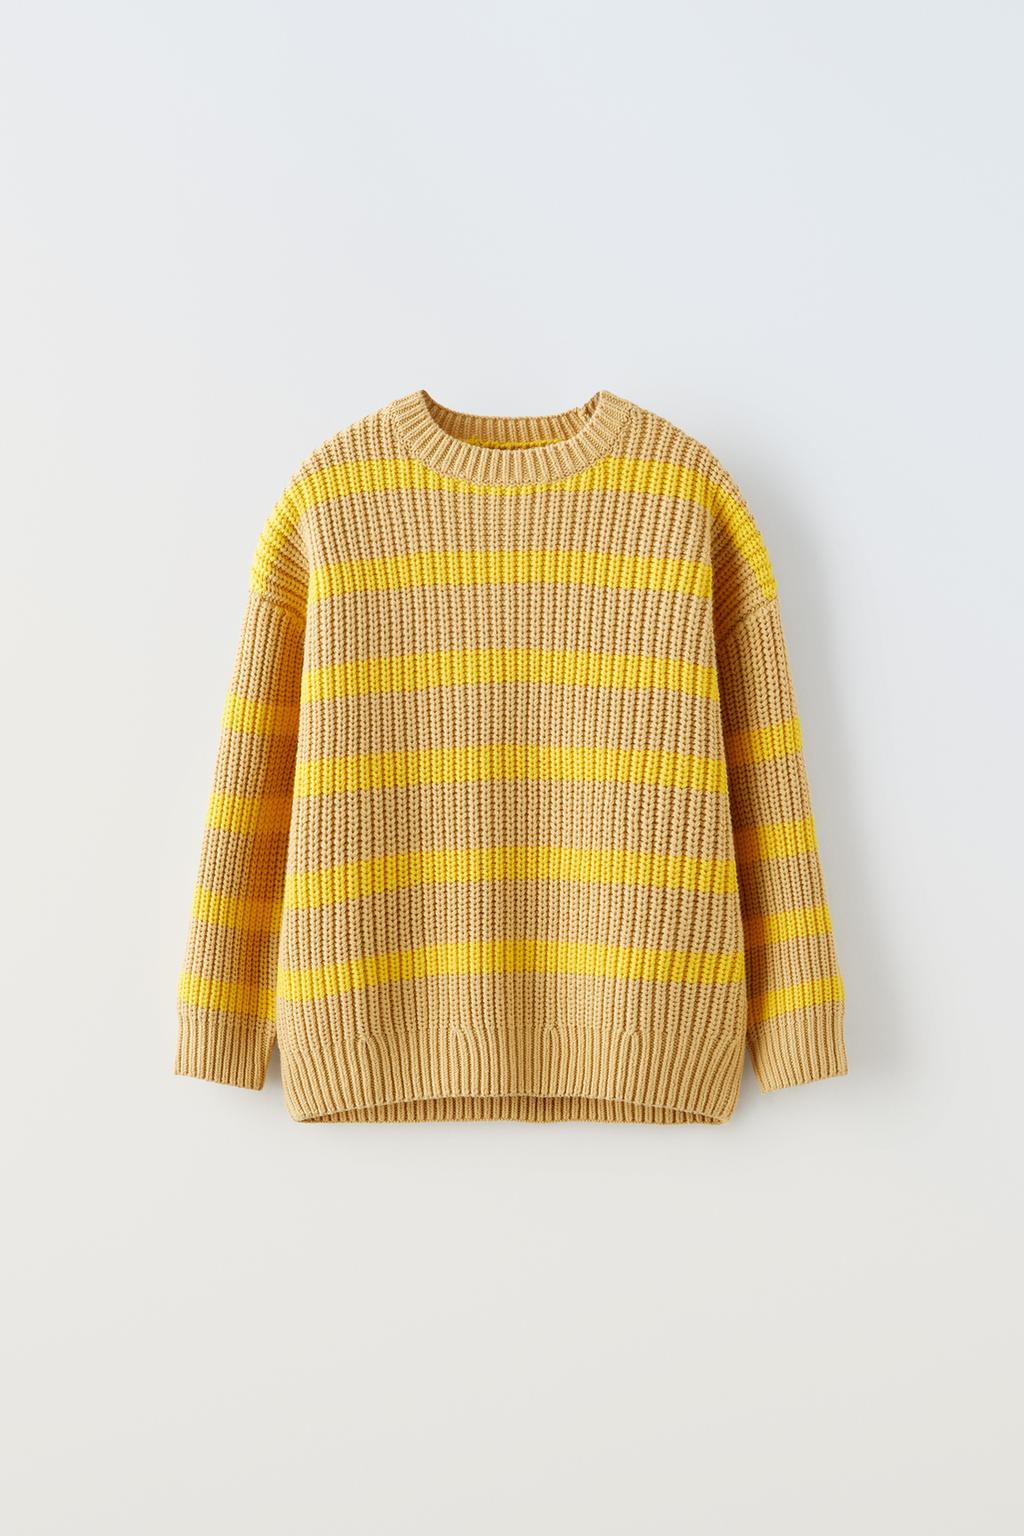 Трикотажный свитер в полоску ZARA, желтый мужской вязаный свитер с круглым вырезом в японском стиле